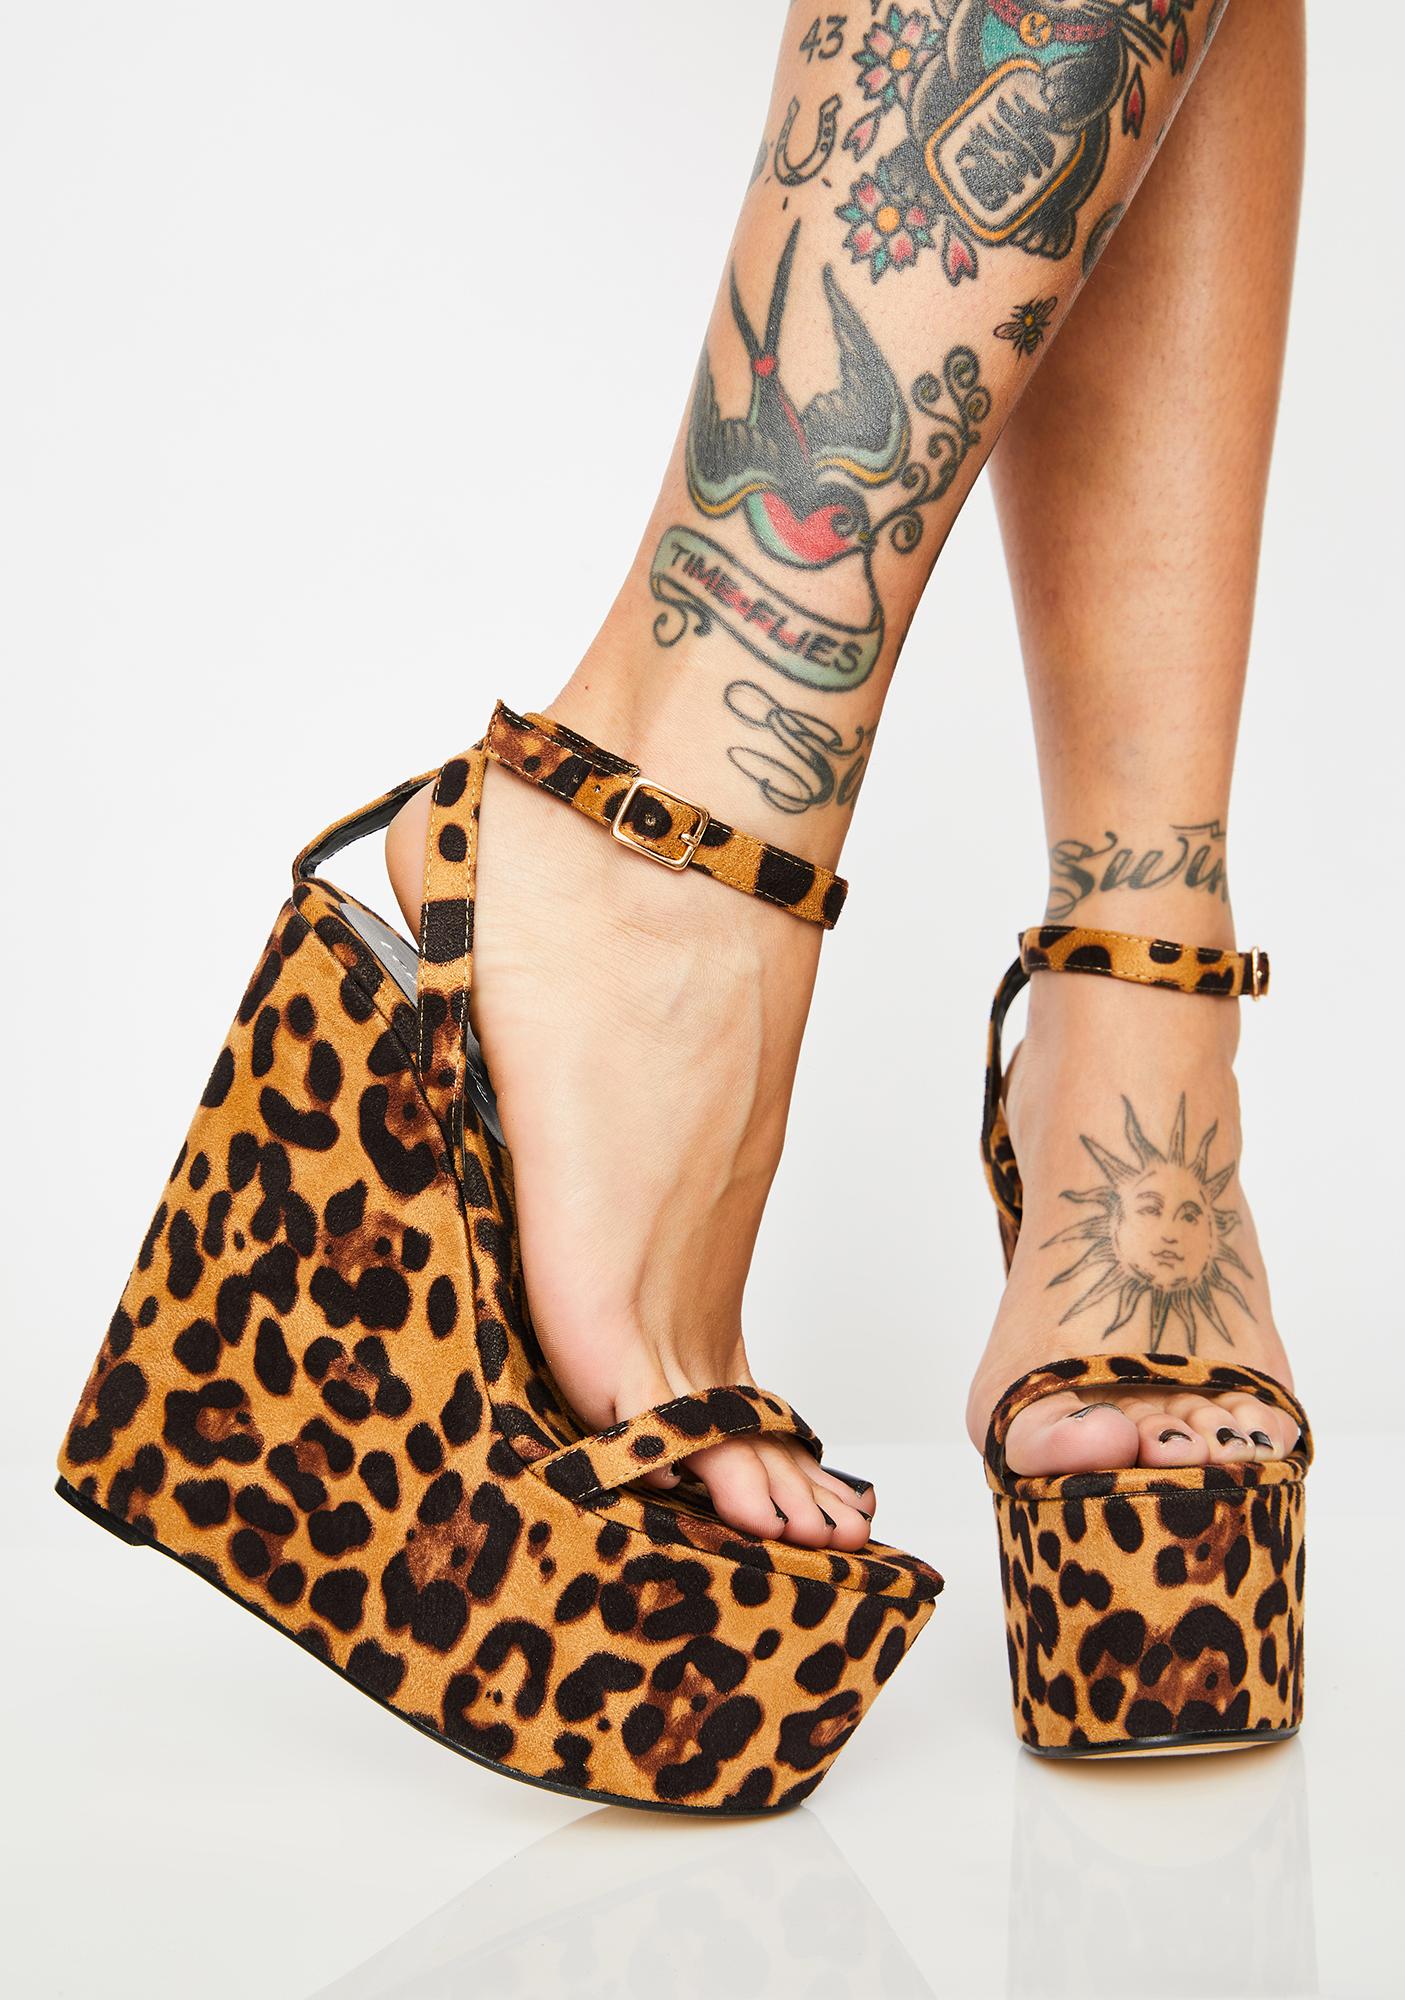 leopard print platform shoes